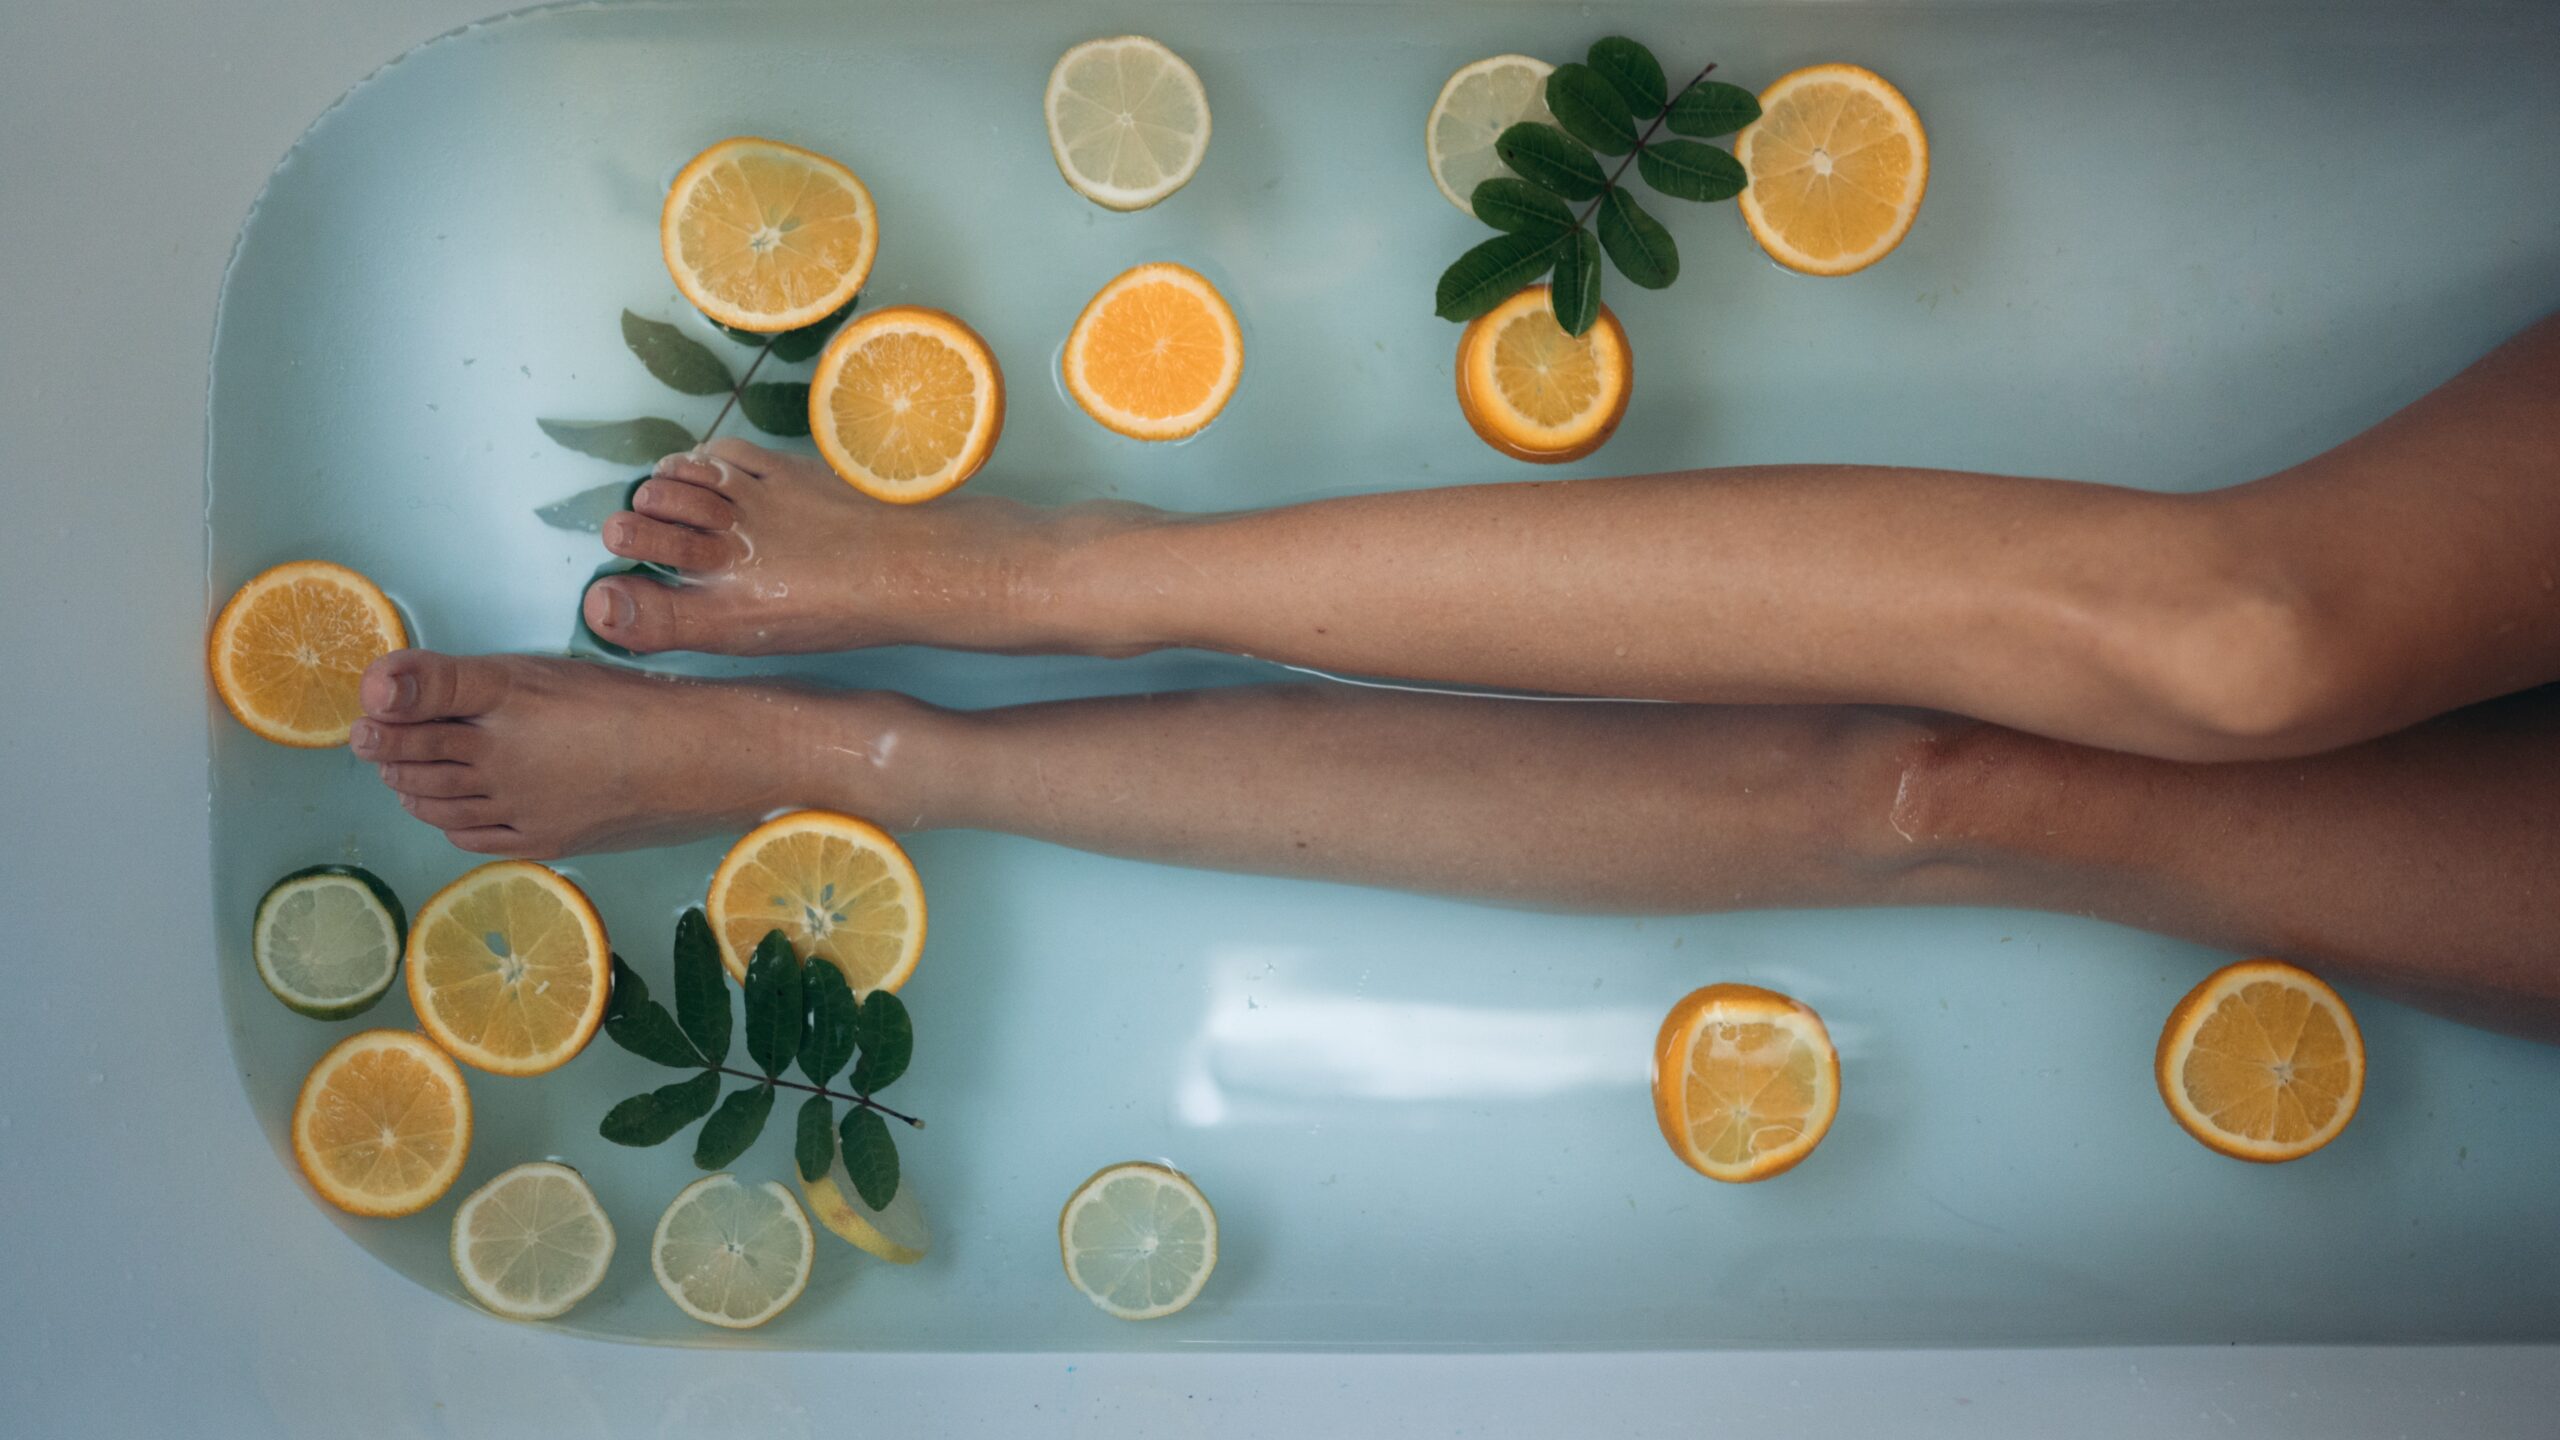 las piernas de una mujer que está en una bañera, el agua tiene rodajas de limones y naranjas